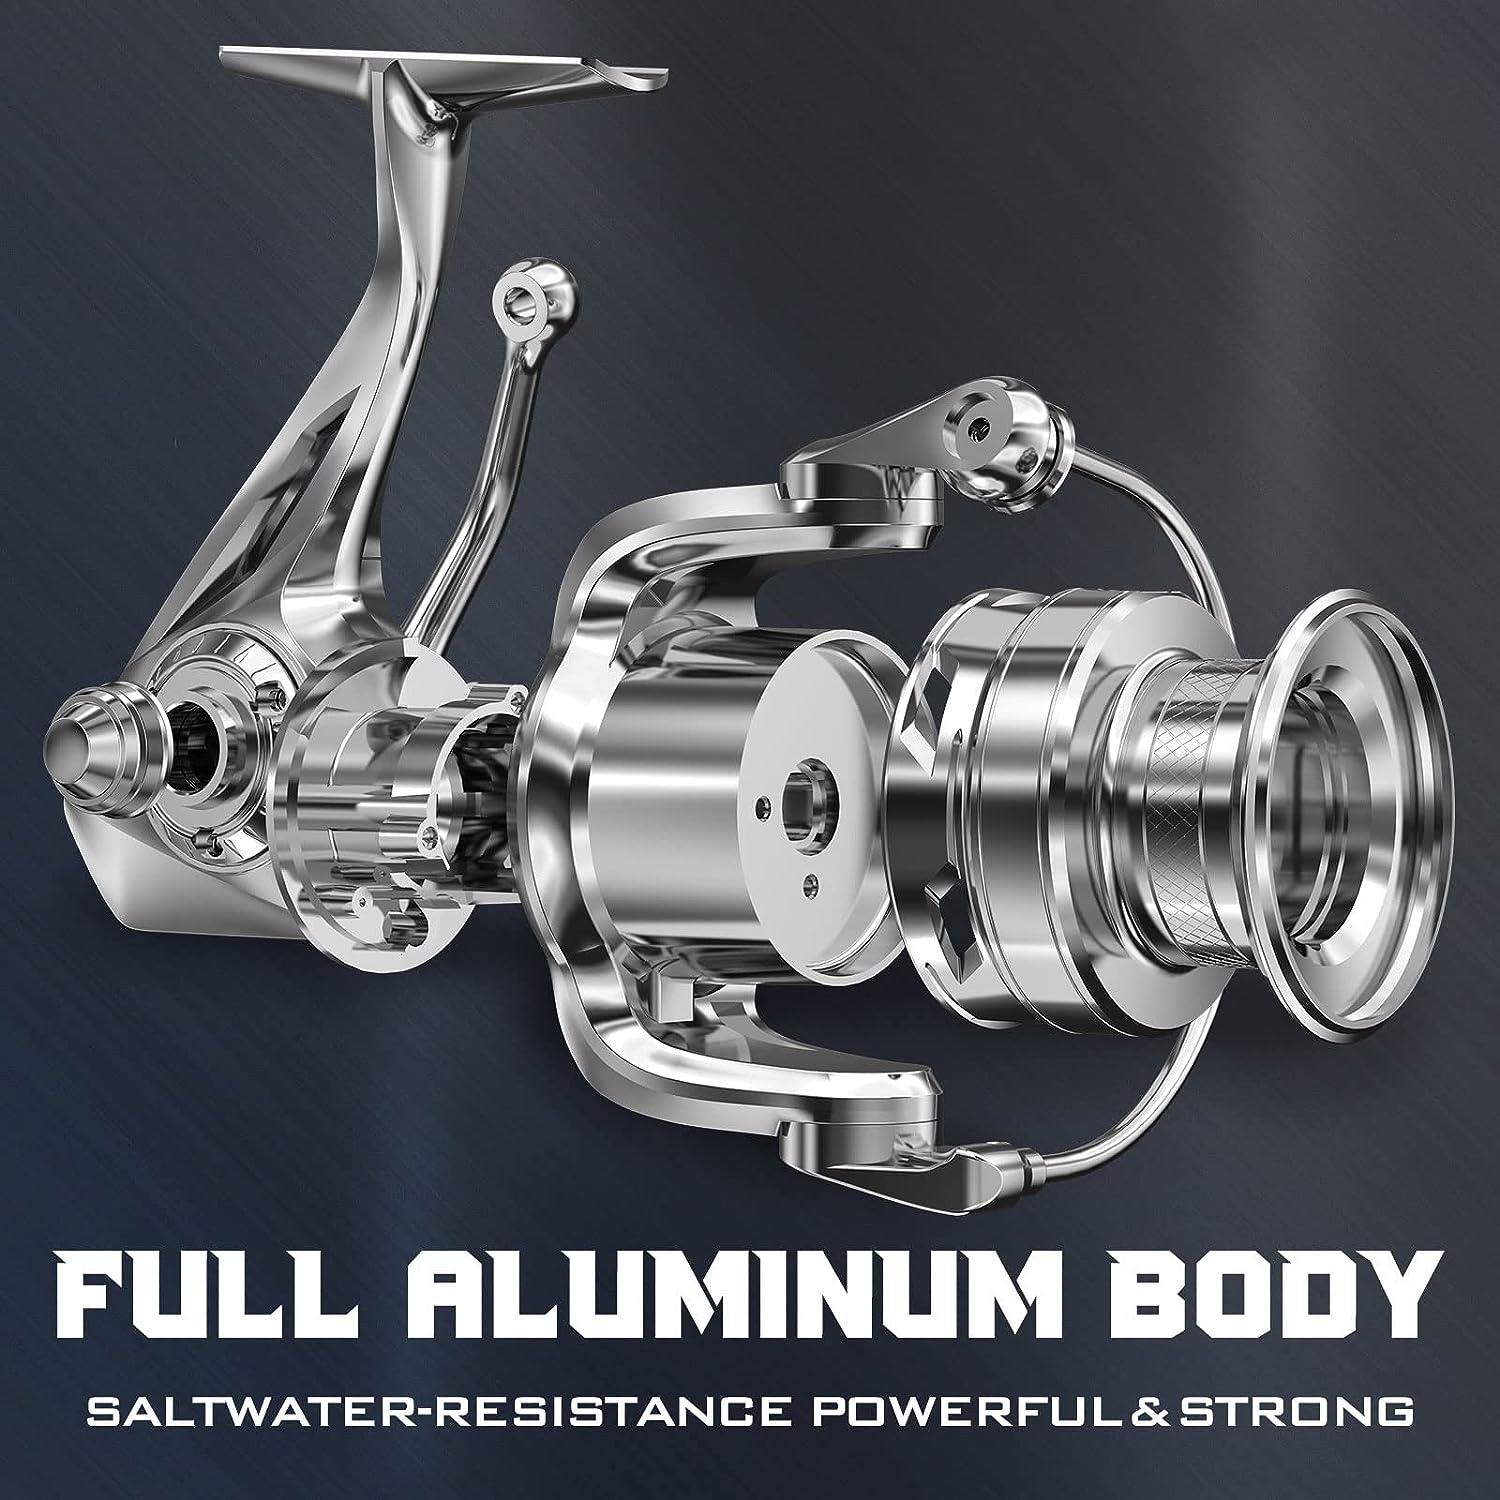 Premium Full Metal CNC Spinning Reel - Perfect for Saltwater Fishing!